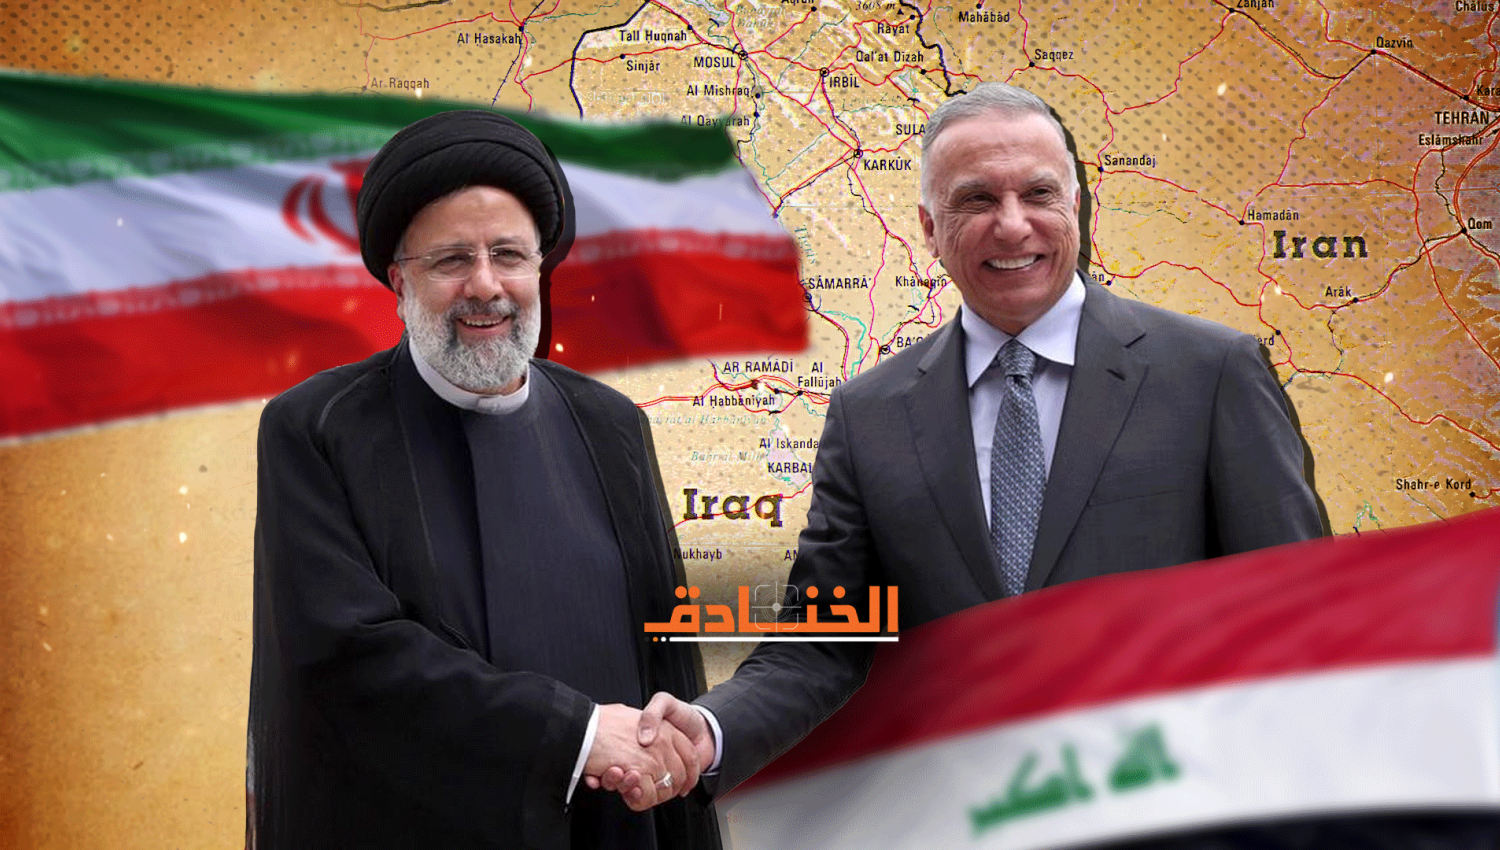 العراق يقرّب المسافة ما بين إيران والسعودية أكثر!